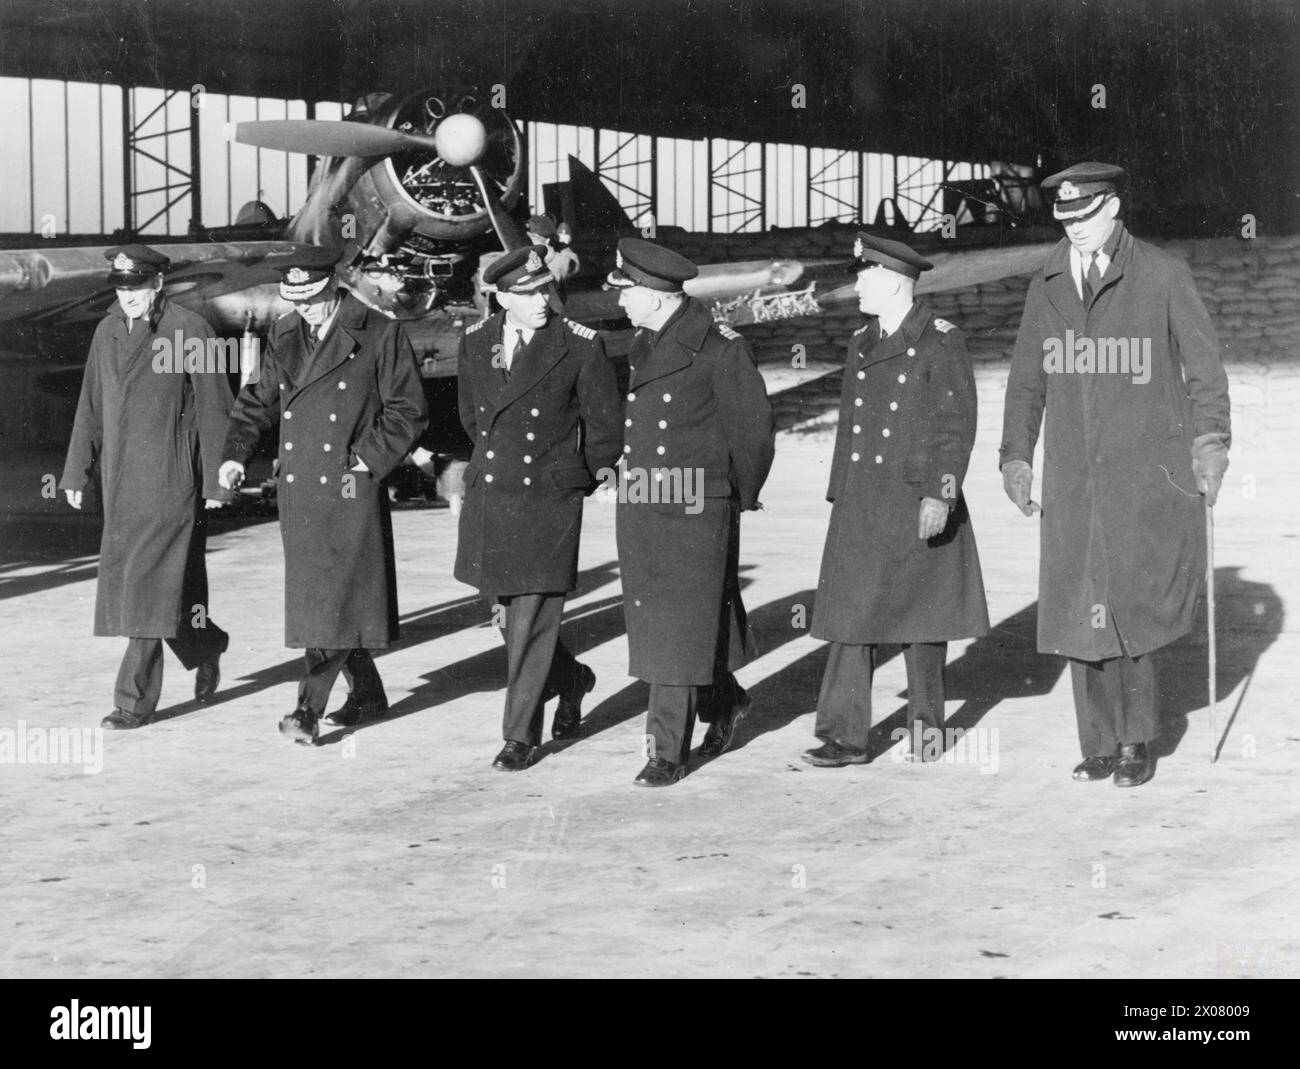 LUFTWAFFENAKTIVITÄTEN DER FLOTTE BEI HMS SPARROWHAWK, ROYAL MARINEFLUGSTATION HATSTON. MÄRZ 1942. - Konteradmiral Naval Air Stationen besuchen die Basis. Von links nach rechts: Lieut Cdr (A) N E Goddard, DSC, RNVR, Pilot der Maschine, die zuerst über Bergen flog, um den BISMARCK zu entdecken, für den er den DSC erhielt; Konteradmiral C Moody, Conteradmiral Naval Air Stations; Captain H L St J Fancourt, RN; Commander H A Traill, OBE, RN; Flag Lieut Cdr Smallwood, RN; und Commander N S Luard, DSC, RN Stockfoto